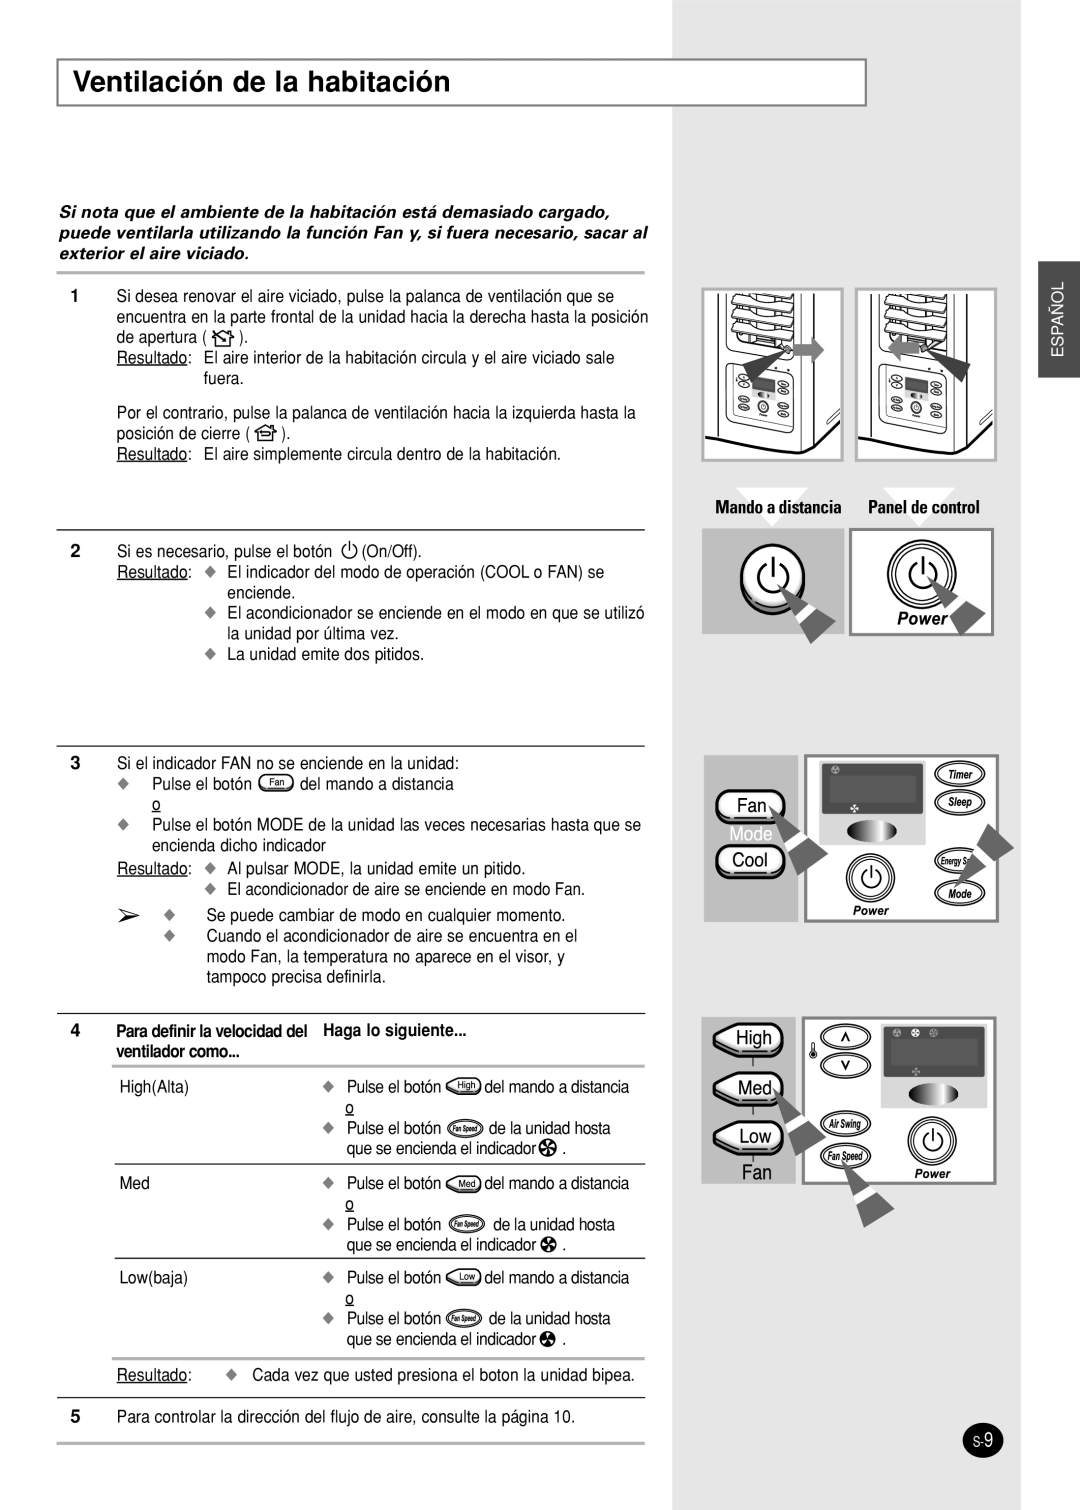 Samsung AW24FBMCA/CB/CC/CD Mando a distancia Panel de control, Haga lo siguiente, ventilador como, Resultado, Español 